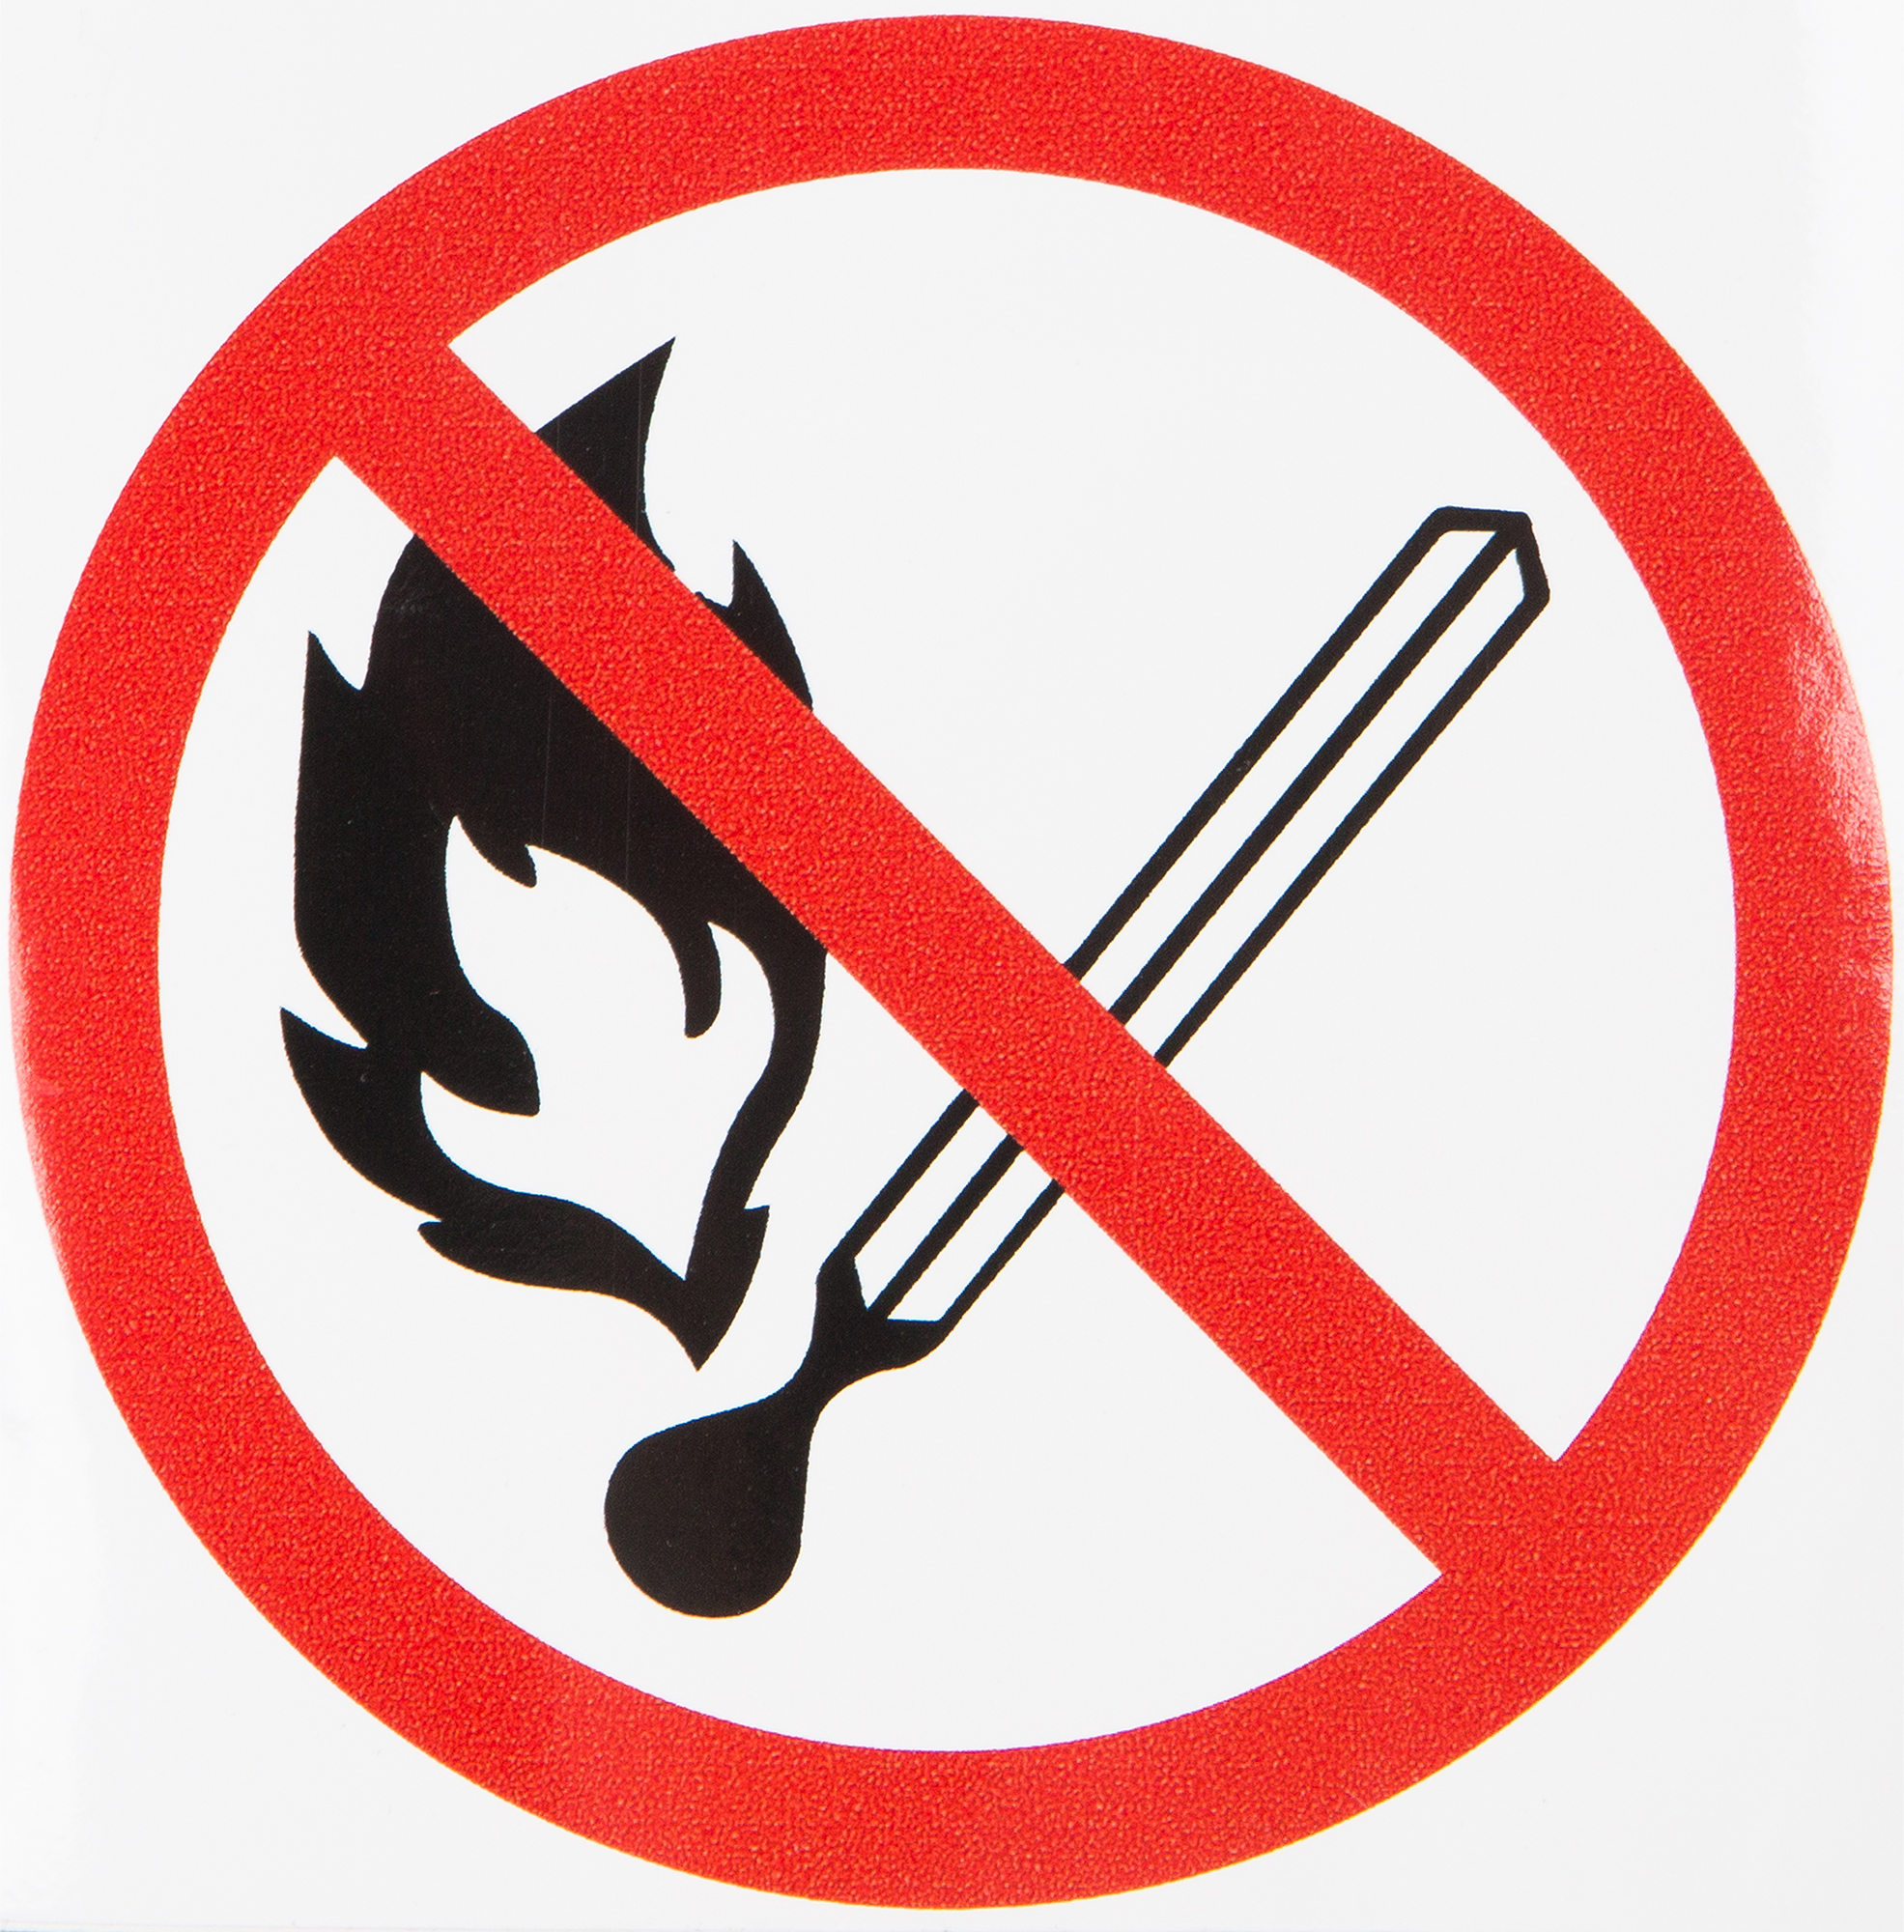 Запрет в жилых помещениях. Знак запрещается пользоваться открытым огнем. Знак запрещено пользоваться открытым огнем и курить. Знак разведение открытого огня запрещено. "Запрещается курить", "запрещается пользоваться открытым огнем"..